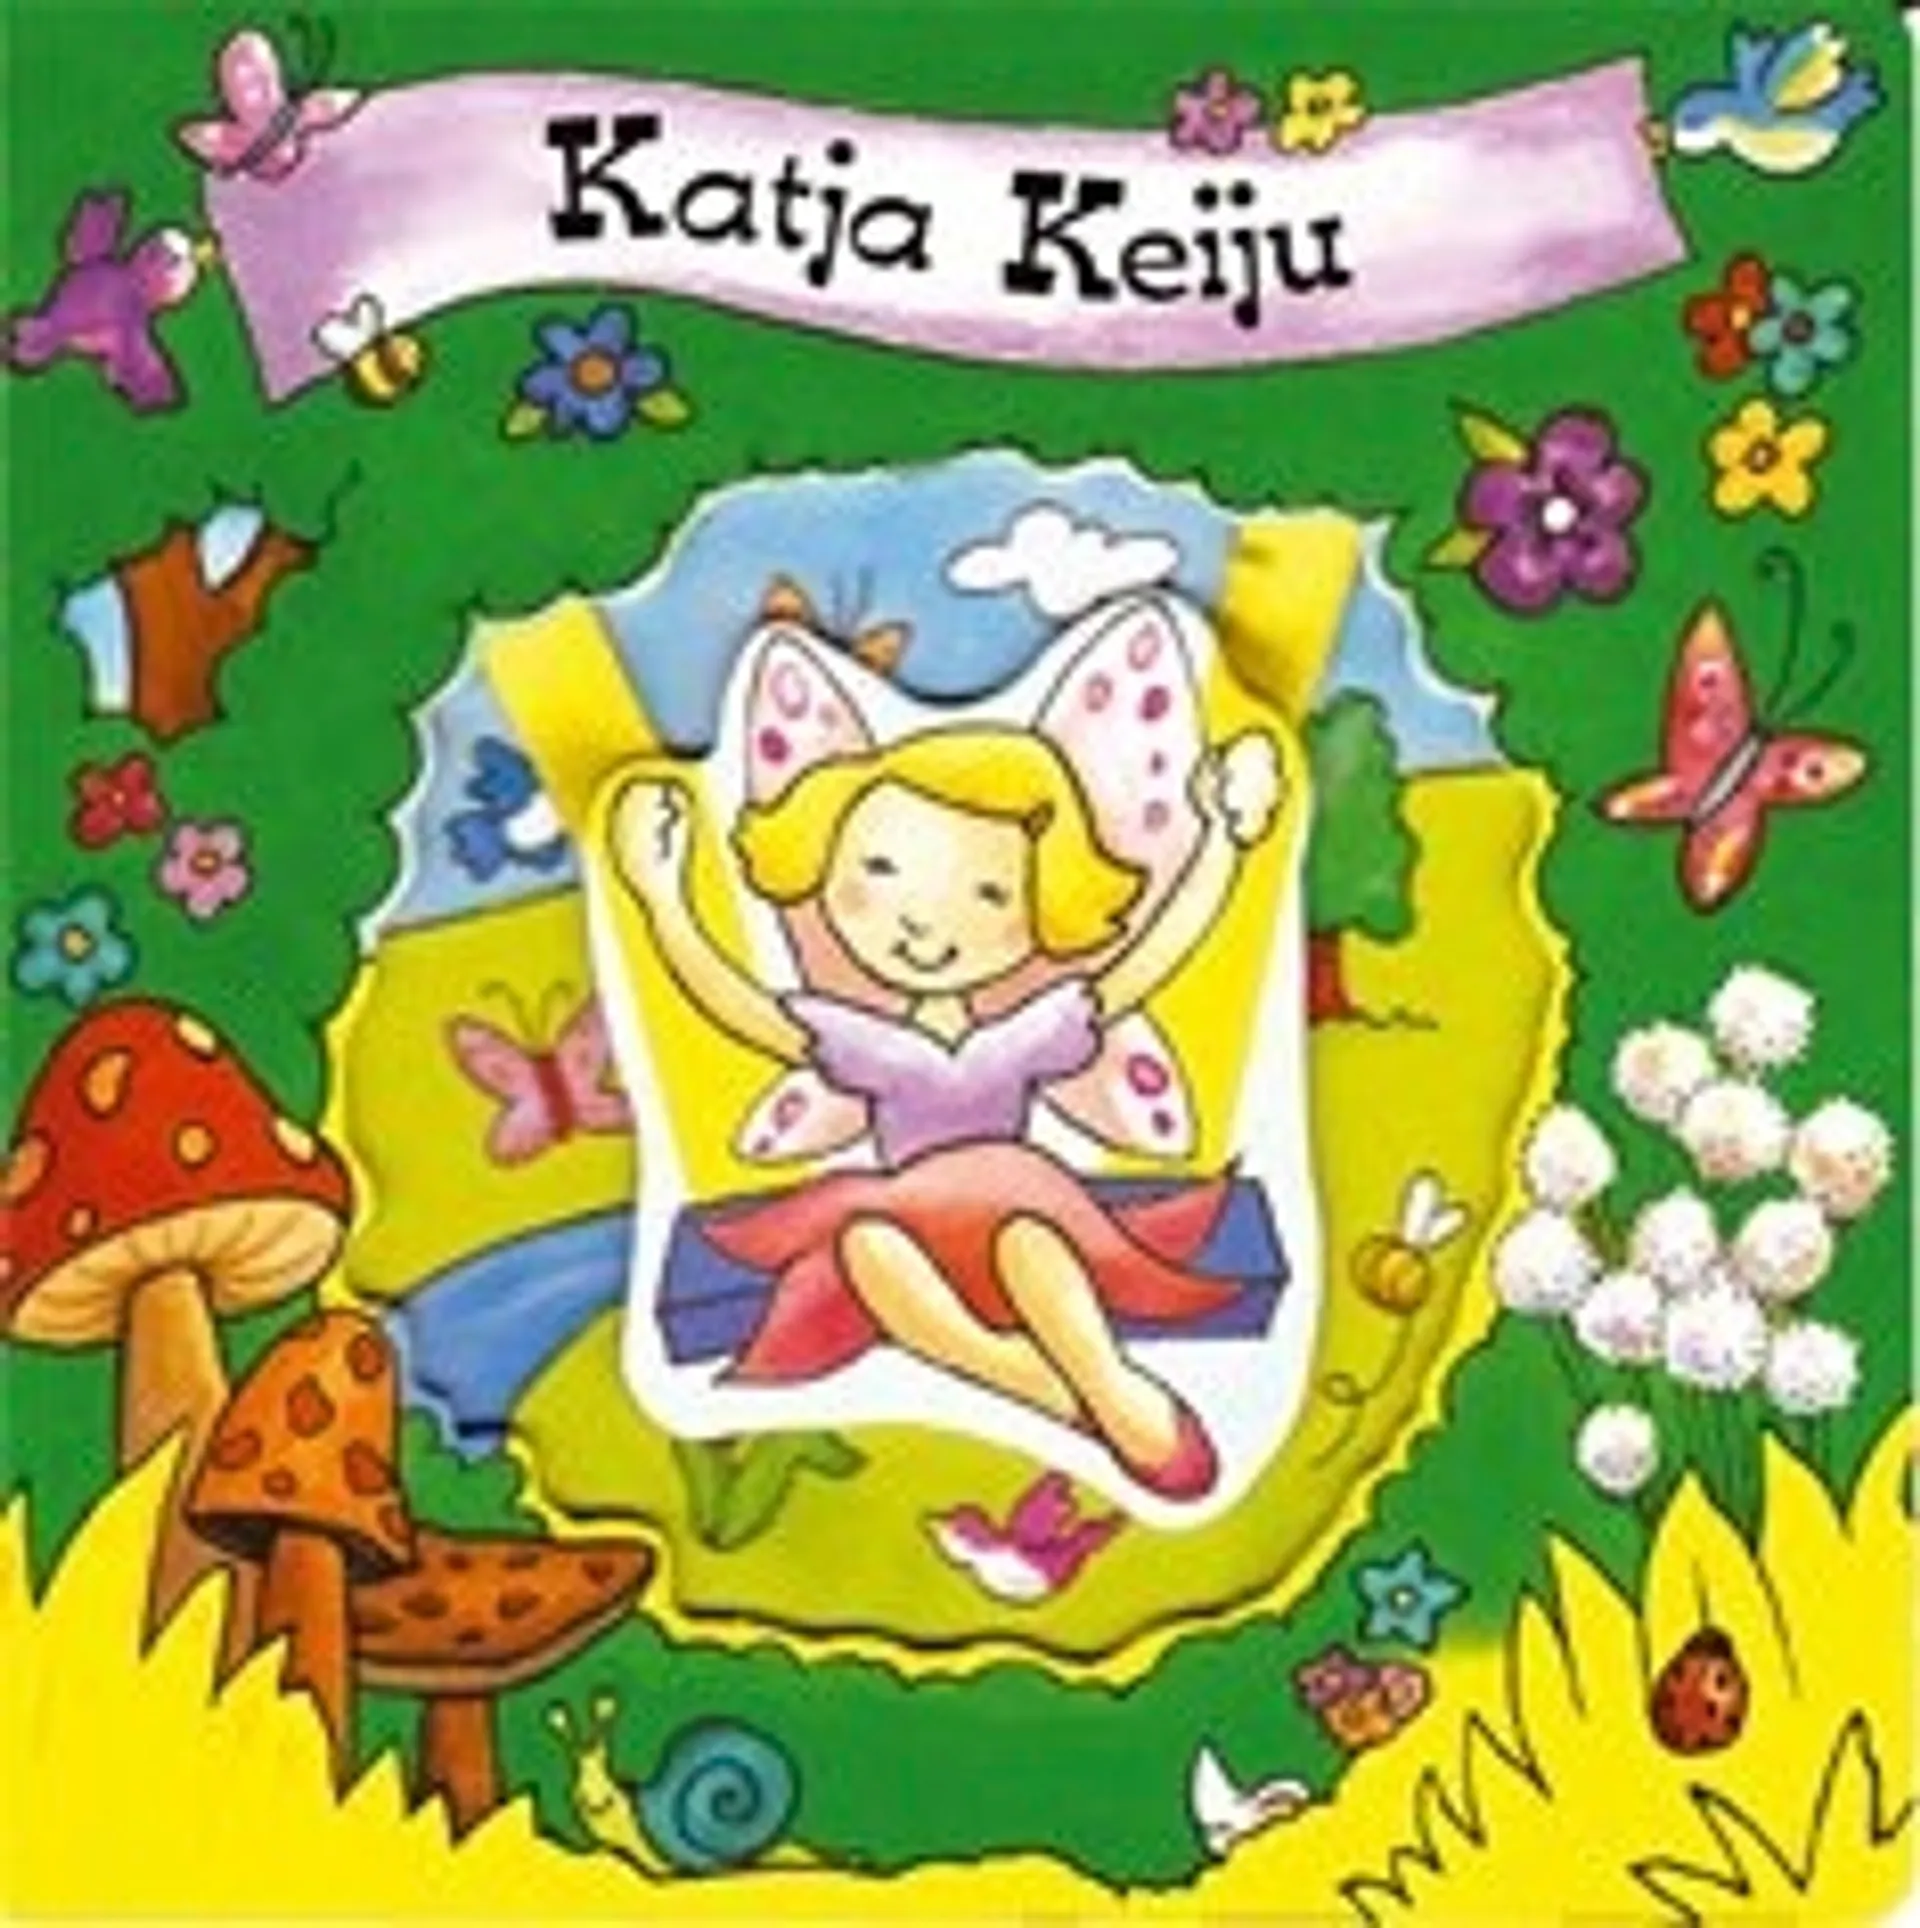 Katja Keiju